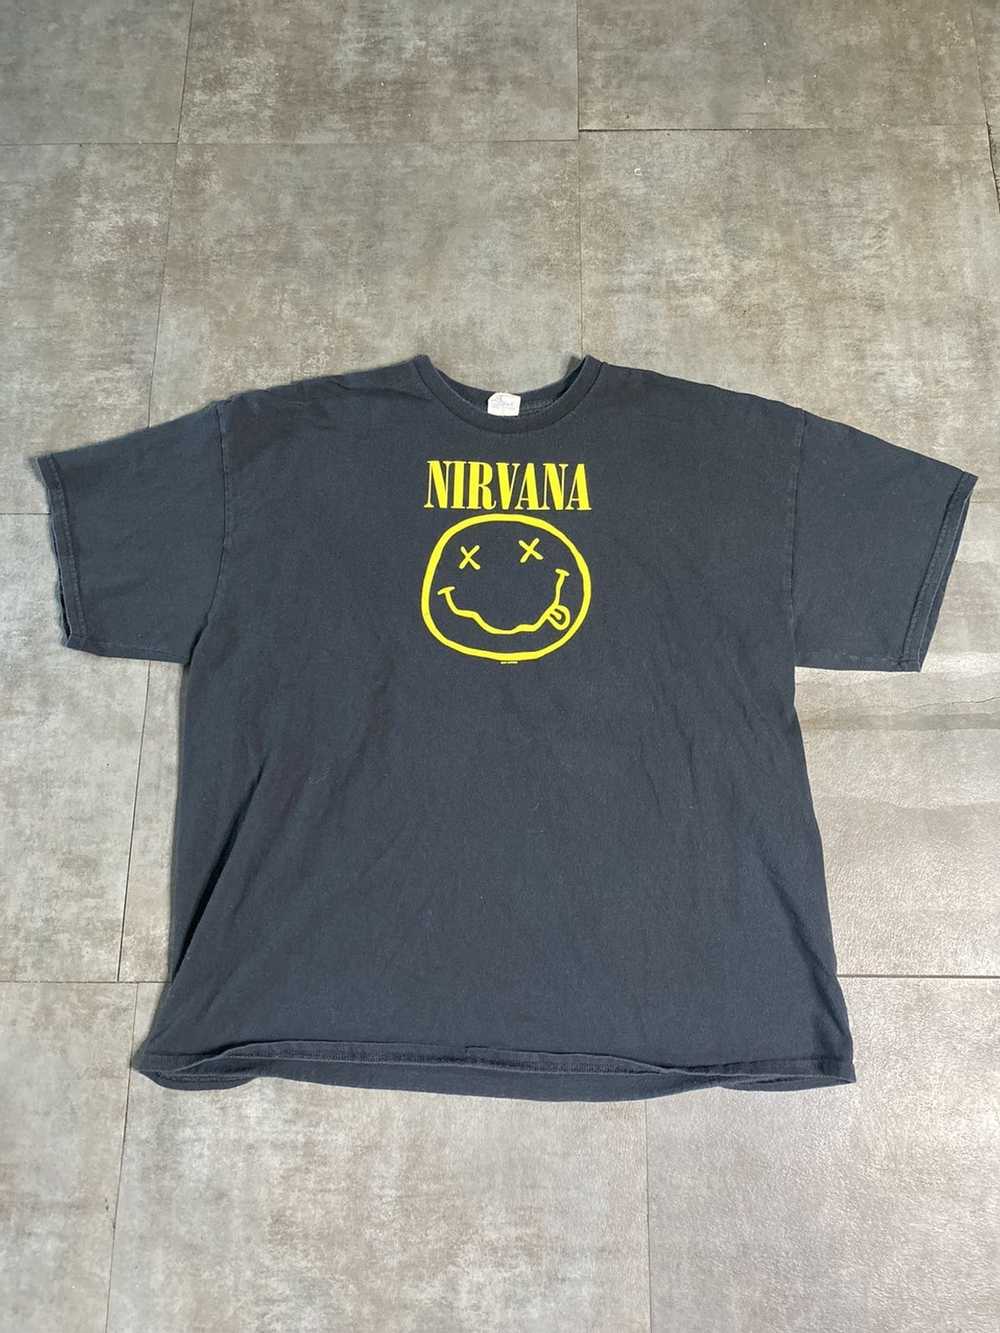 Nirvana × Vintage intage 2003 Nirvana Tee. - image 1